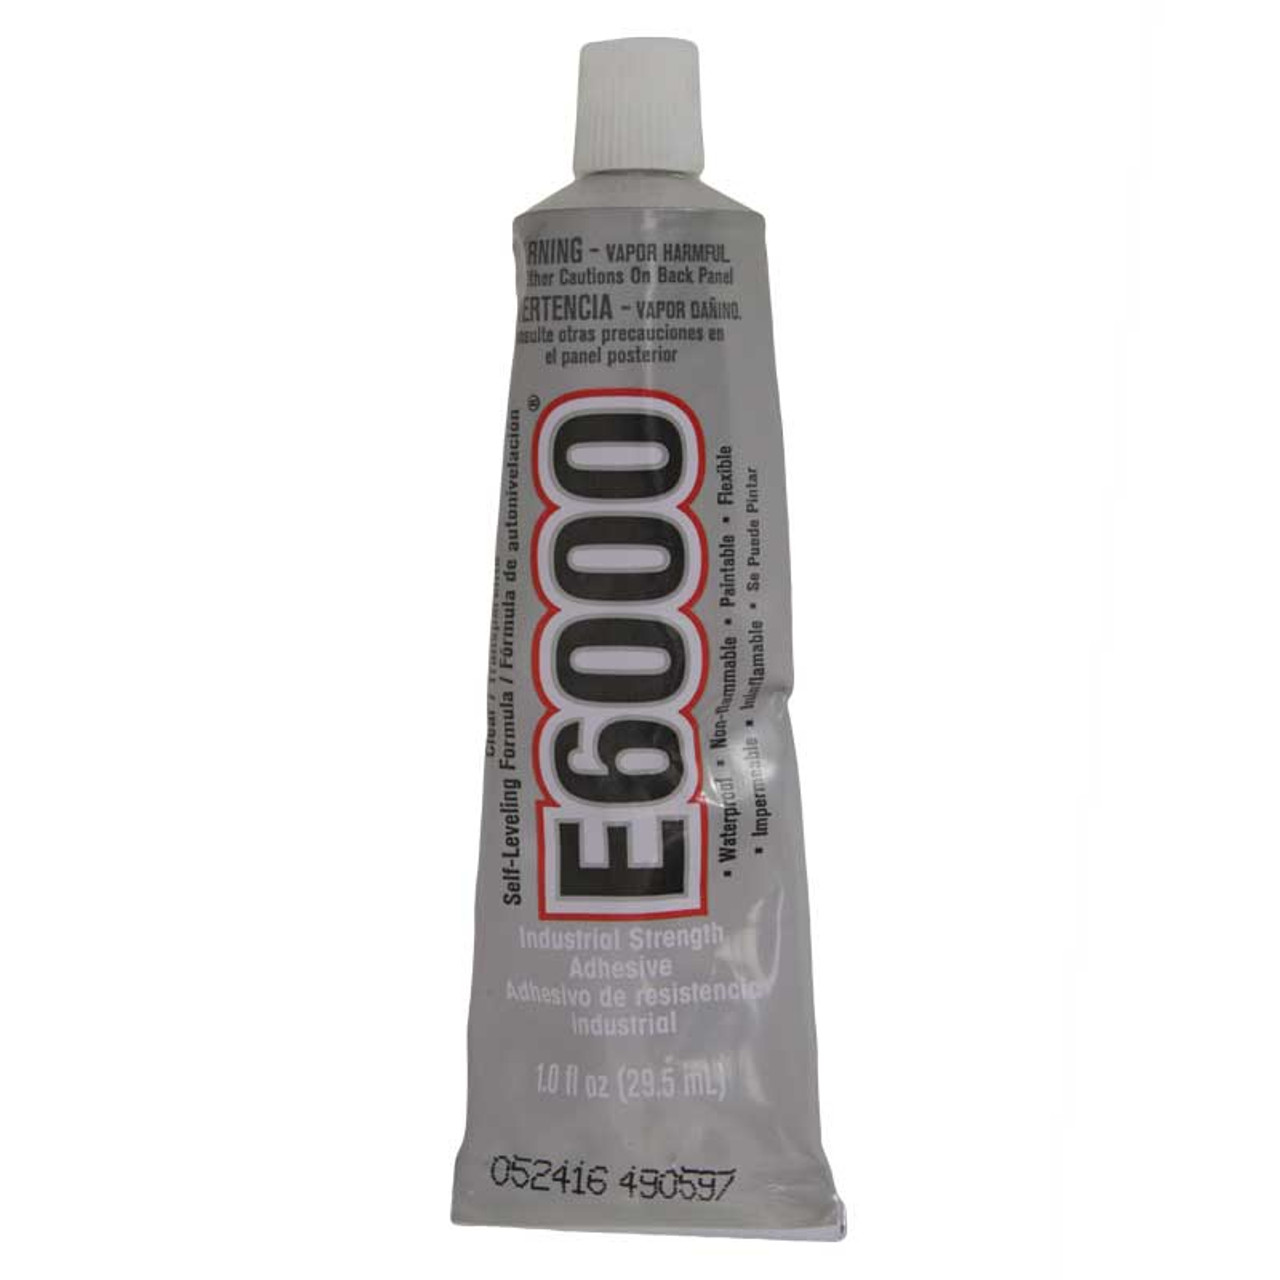 E6000 Glue, Various Sizes